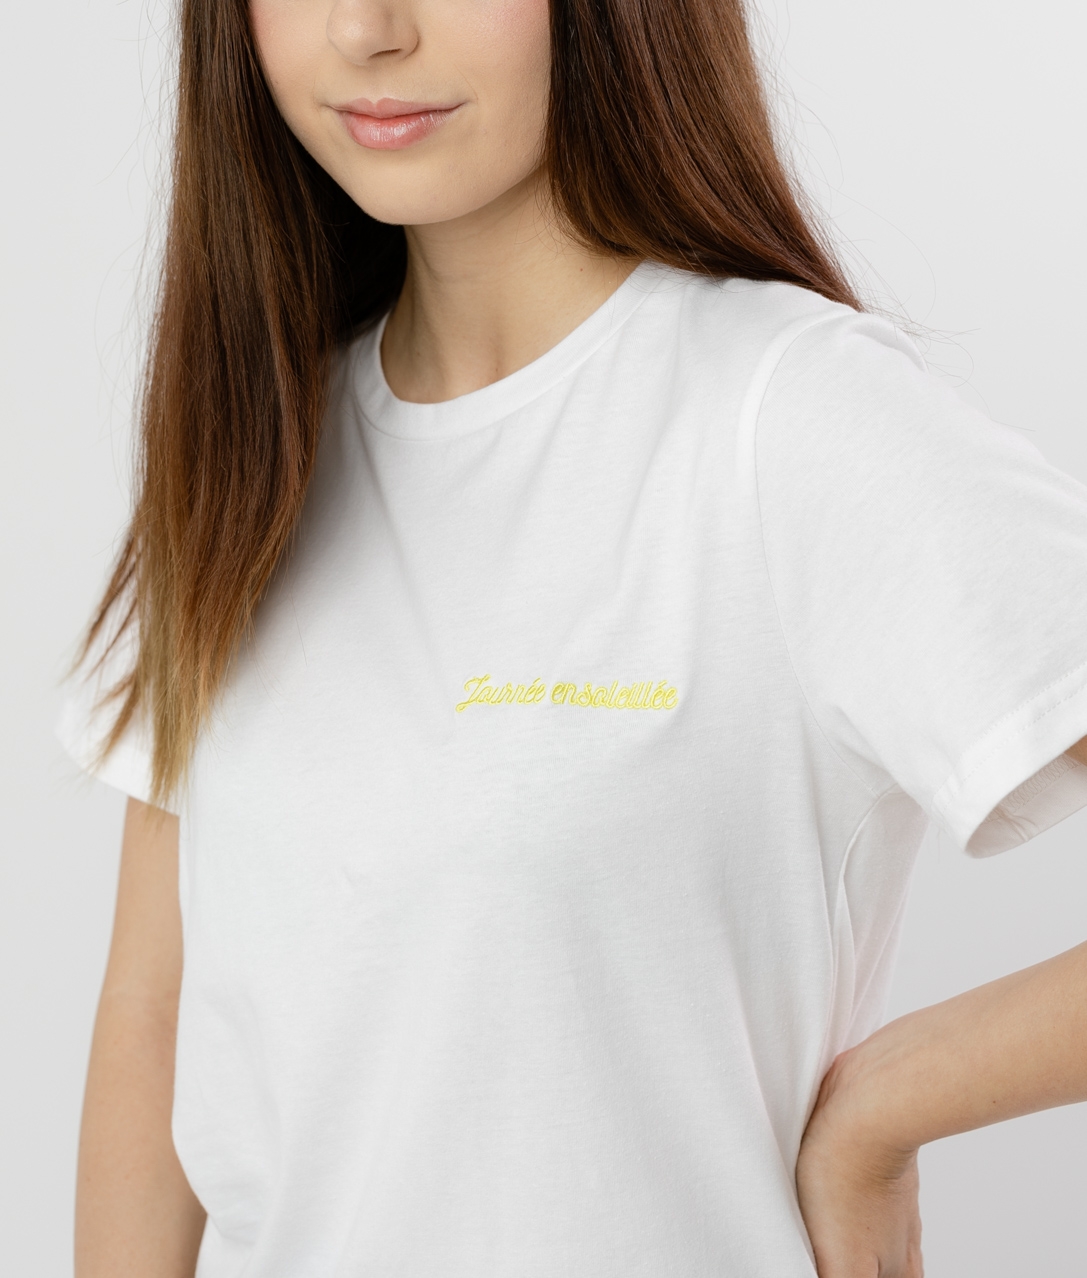 Camiseta Drexu - Branco